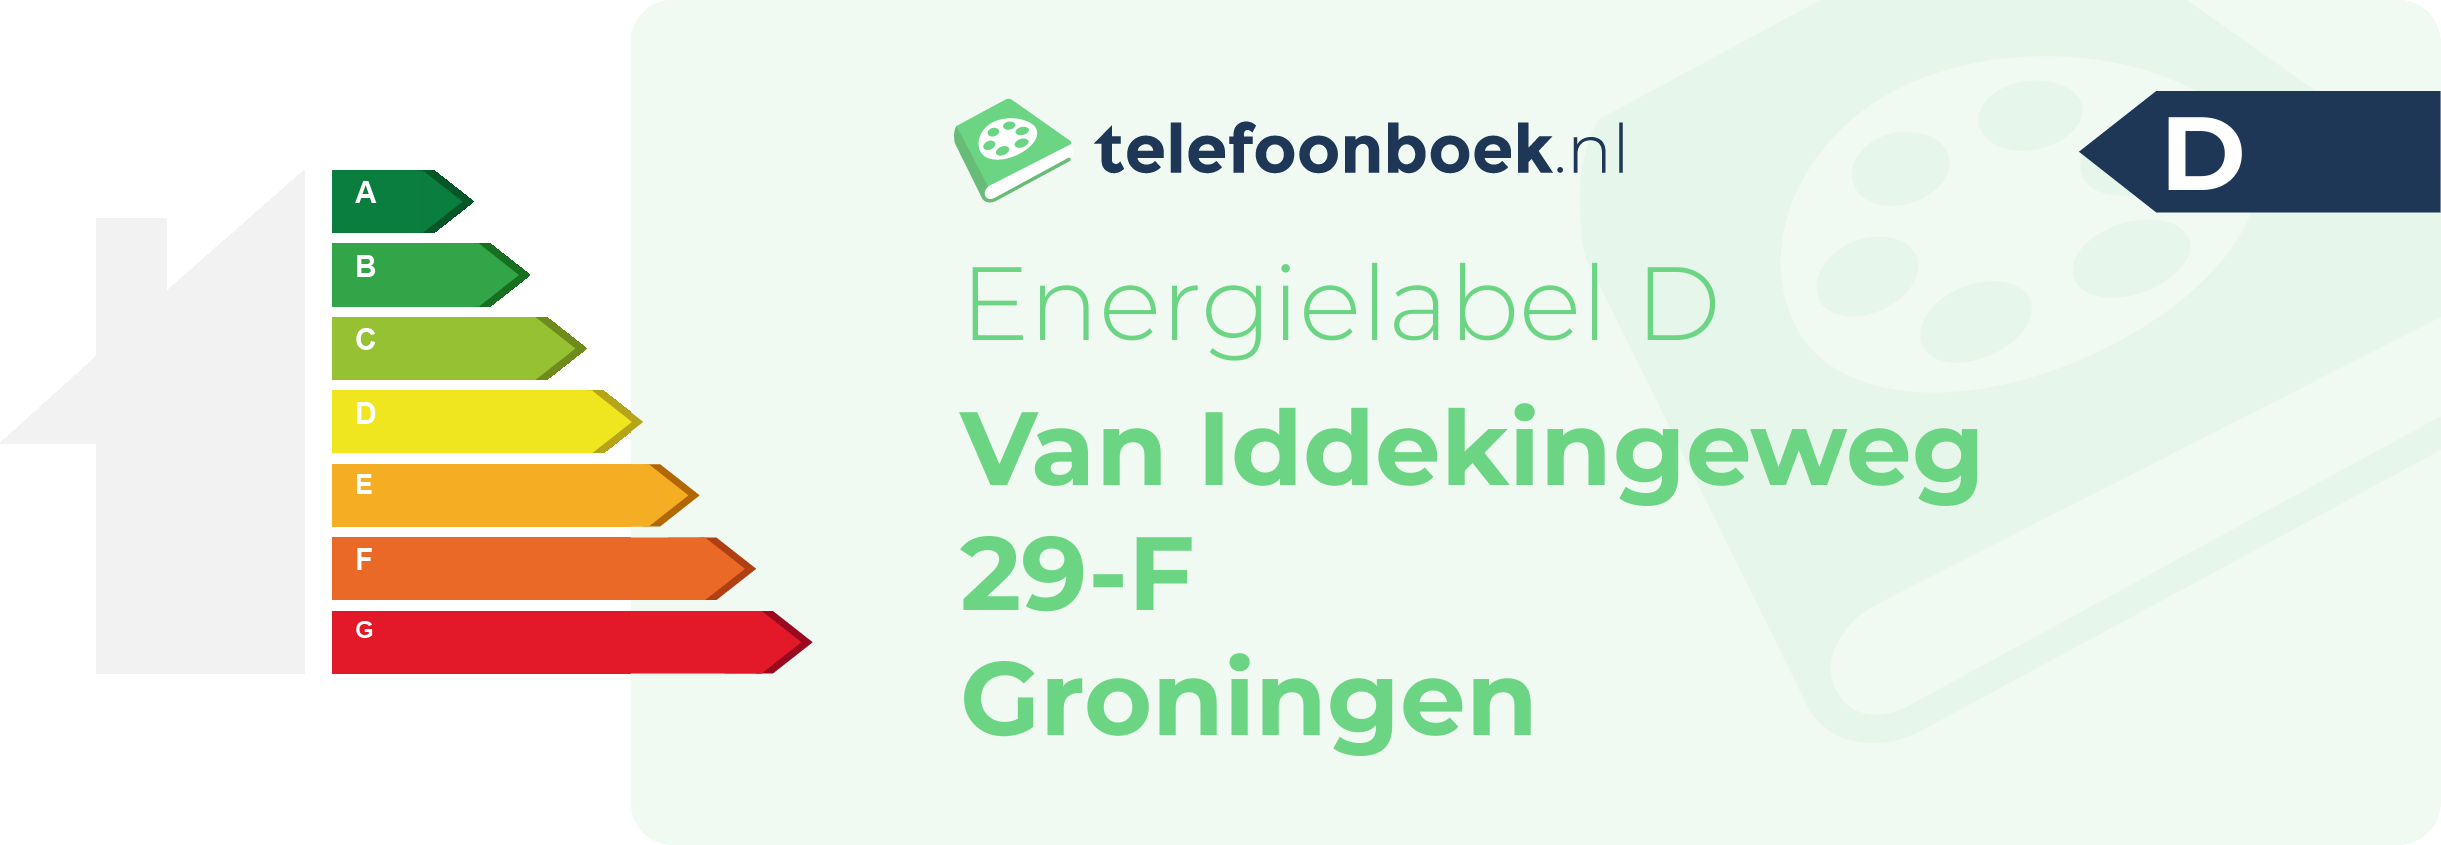 Energielabel Van Iddekingeweg 29-F Groningen